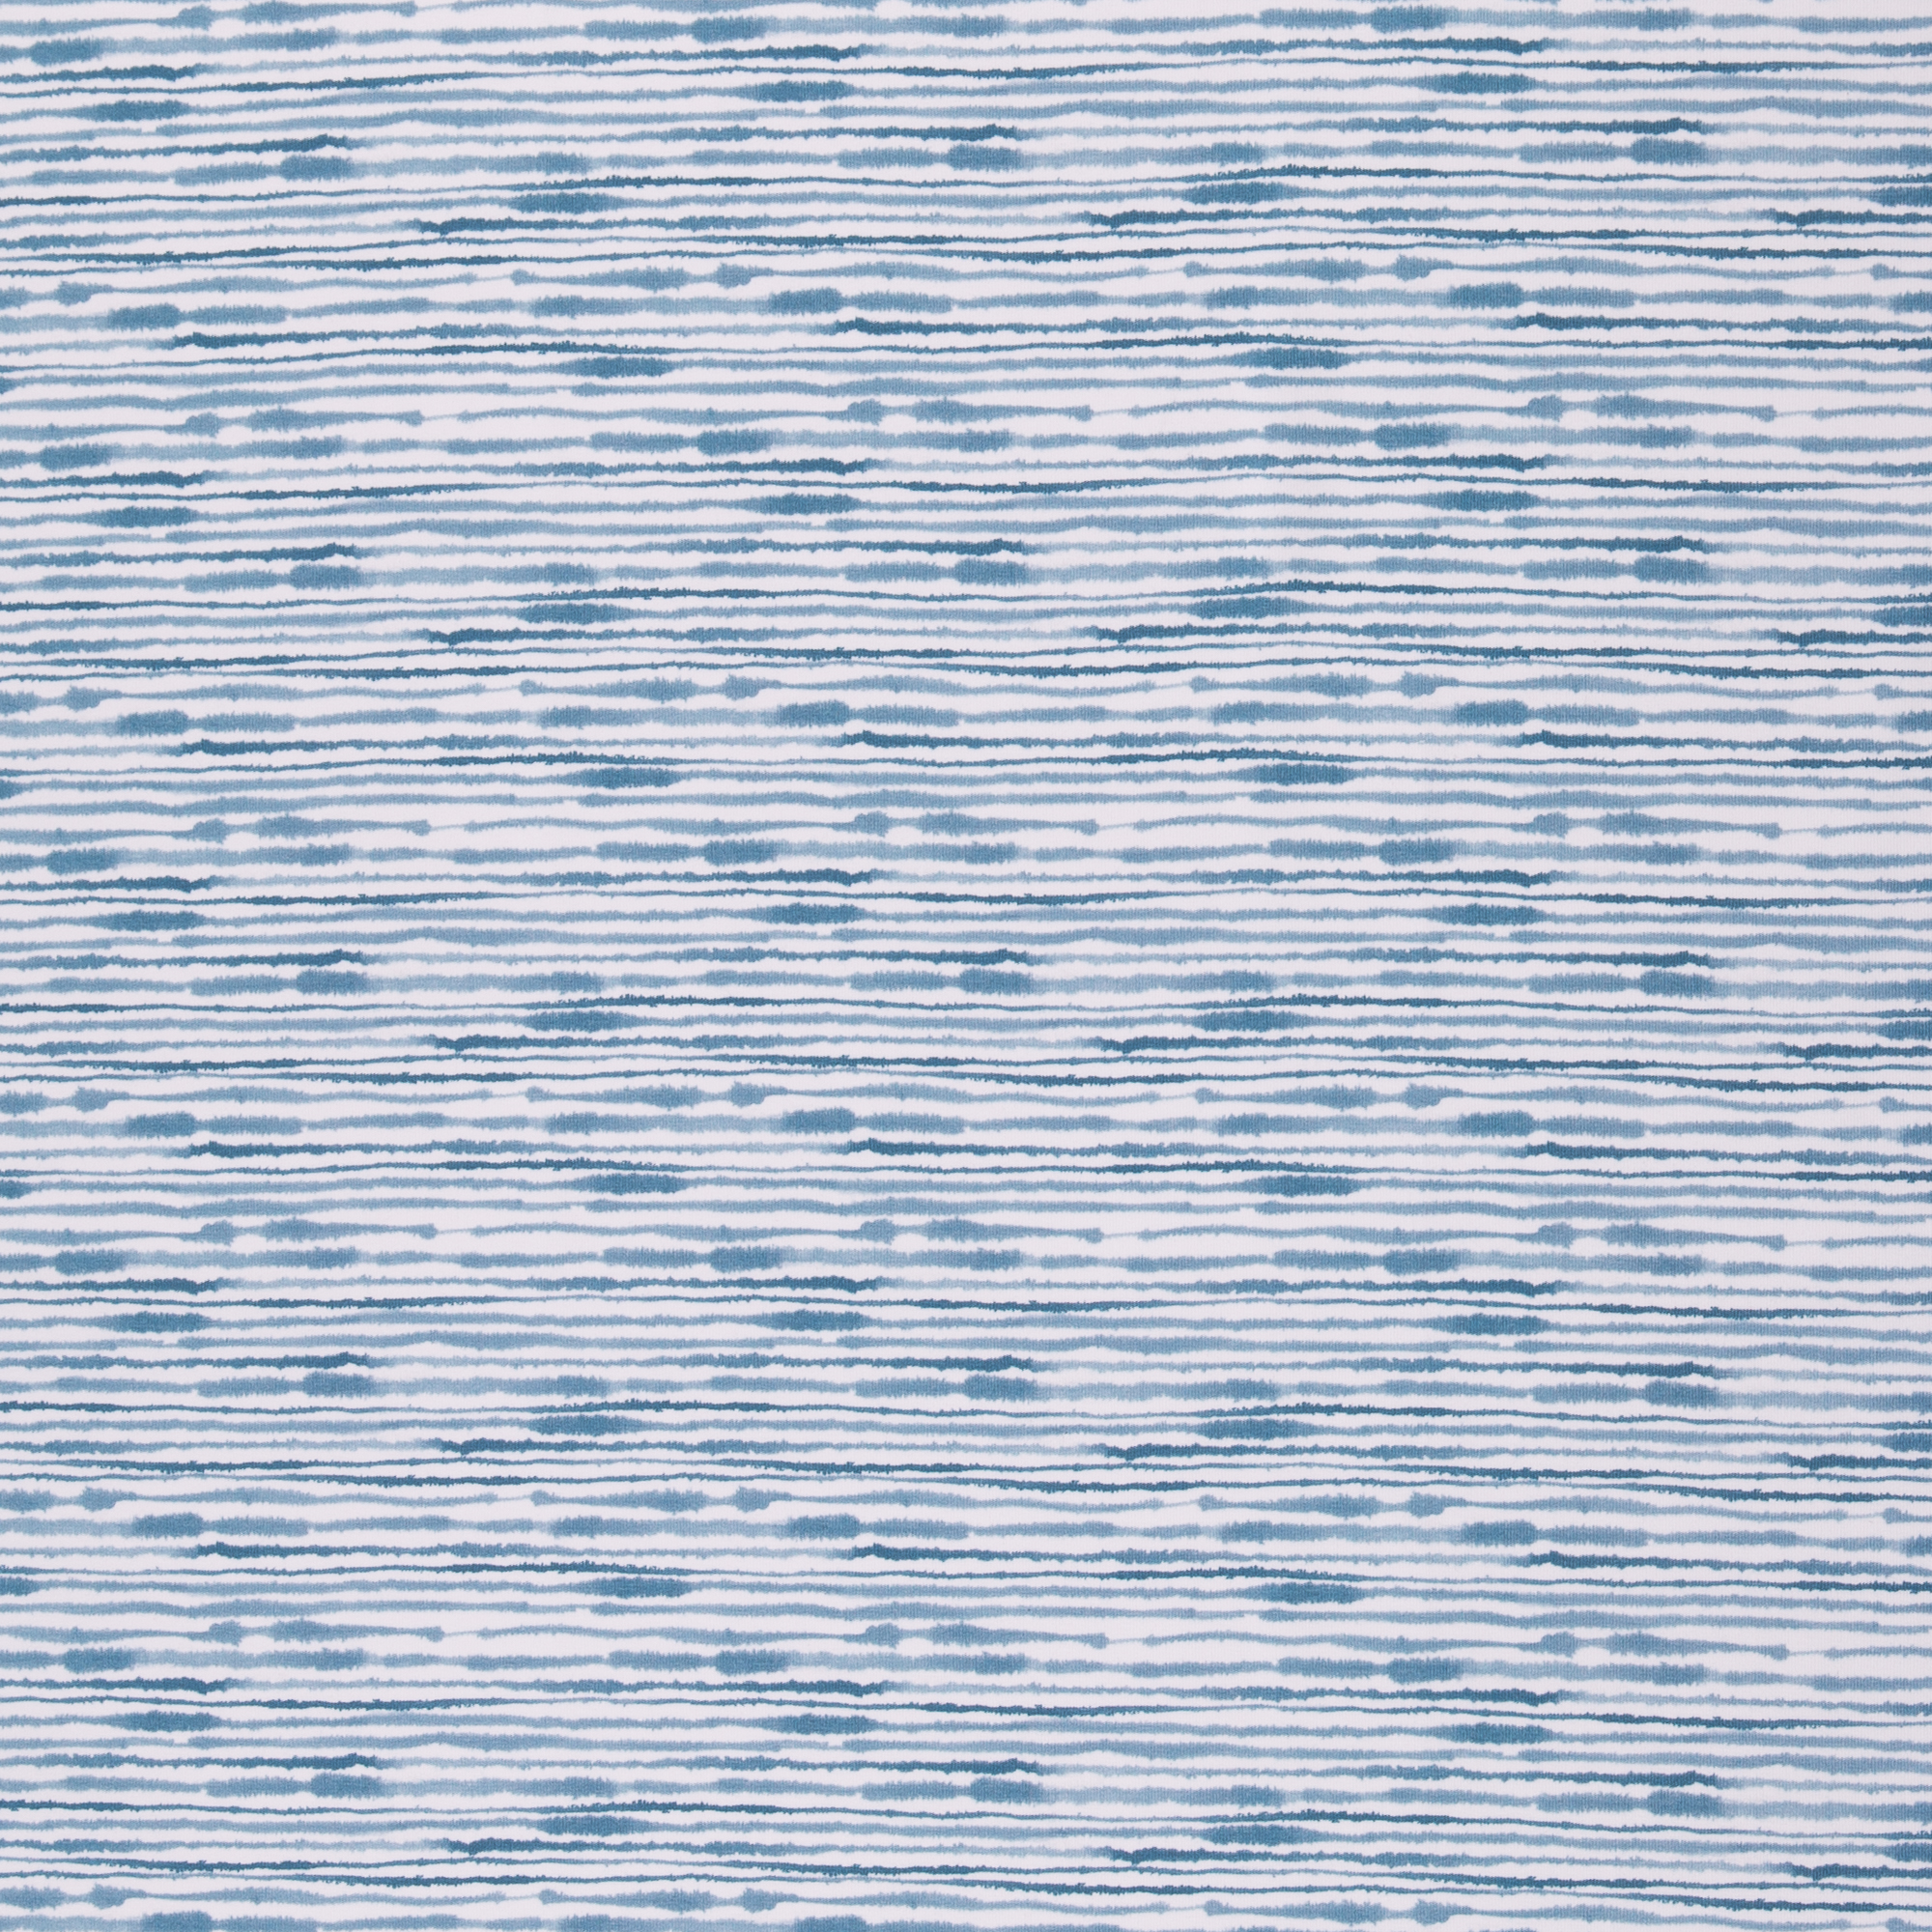 Baumwolljersey - Ocean Breece schmale Streifen hellblau